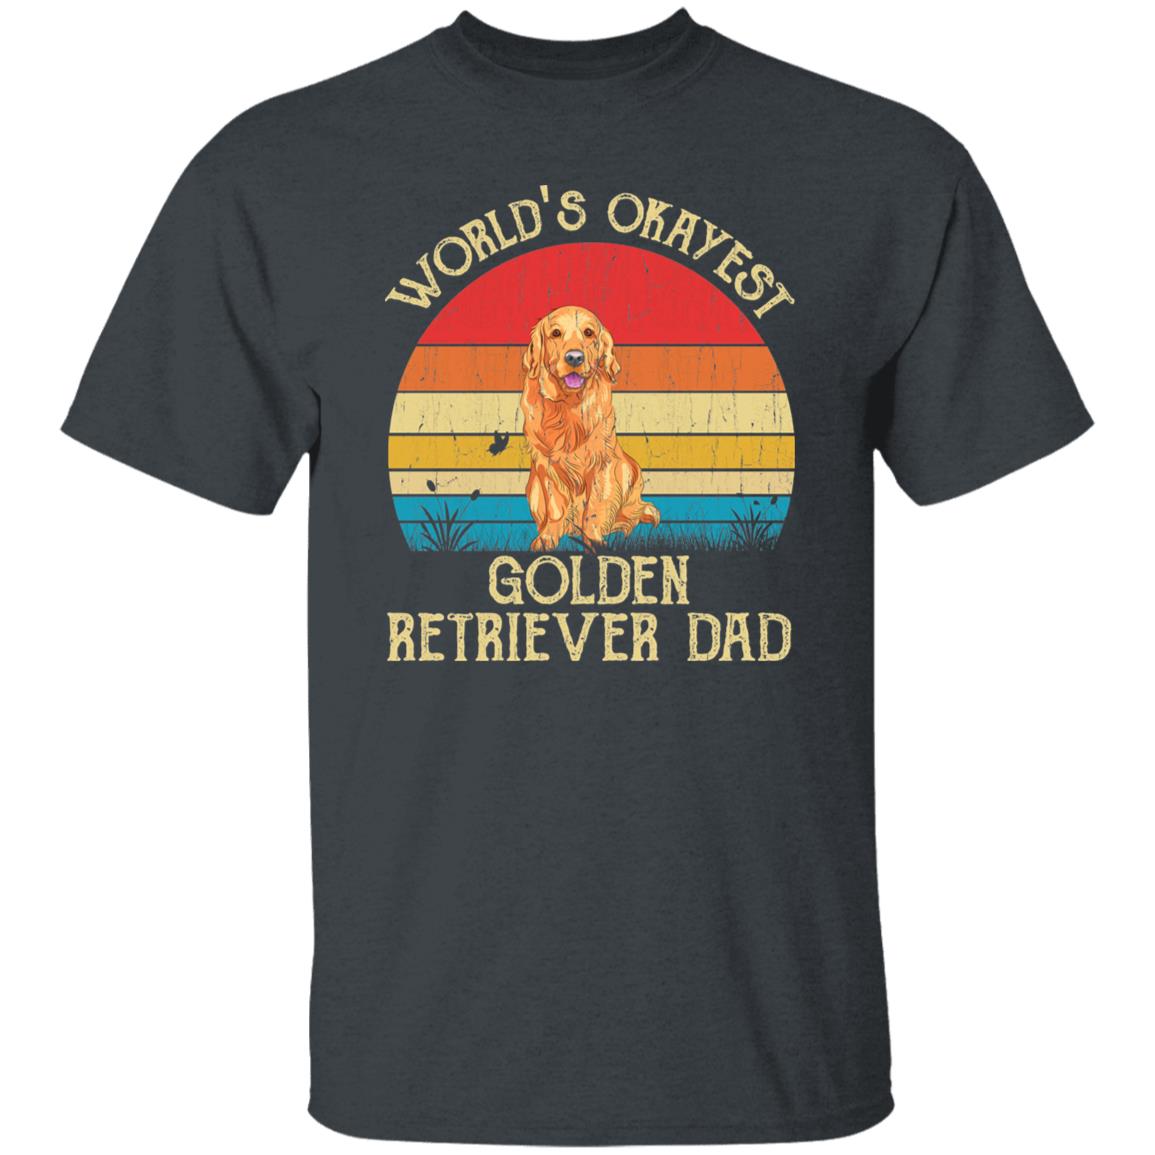 World's Okayest Golden retriever dad Retro Style Unisex T-shirt Black Navy Dark Heather-Dark Heather-Family-Gift-Planet